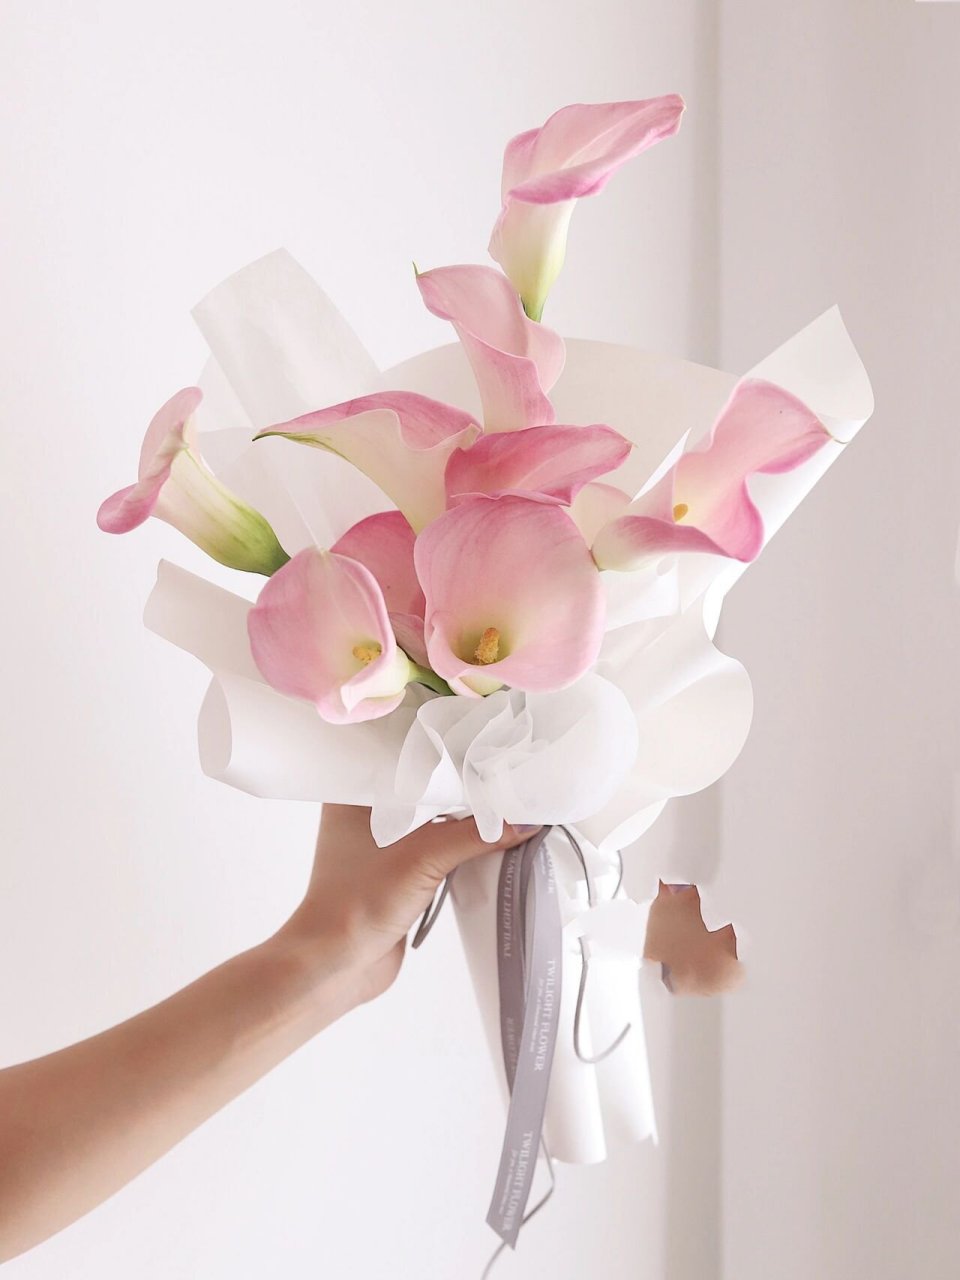 仙粉色马蹄莲花束 干净气质温柔领证花束 简简单单的 单品马蹄莲花束